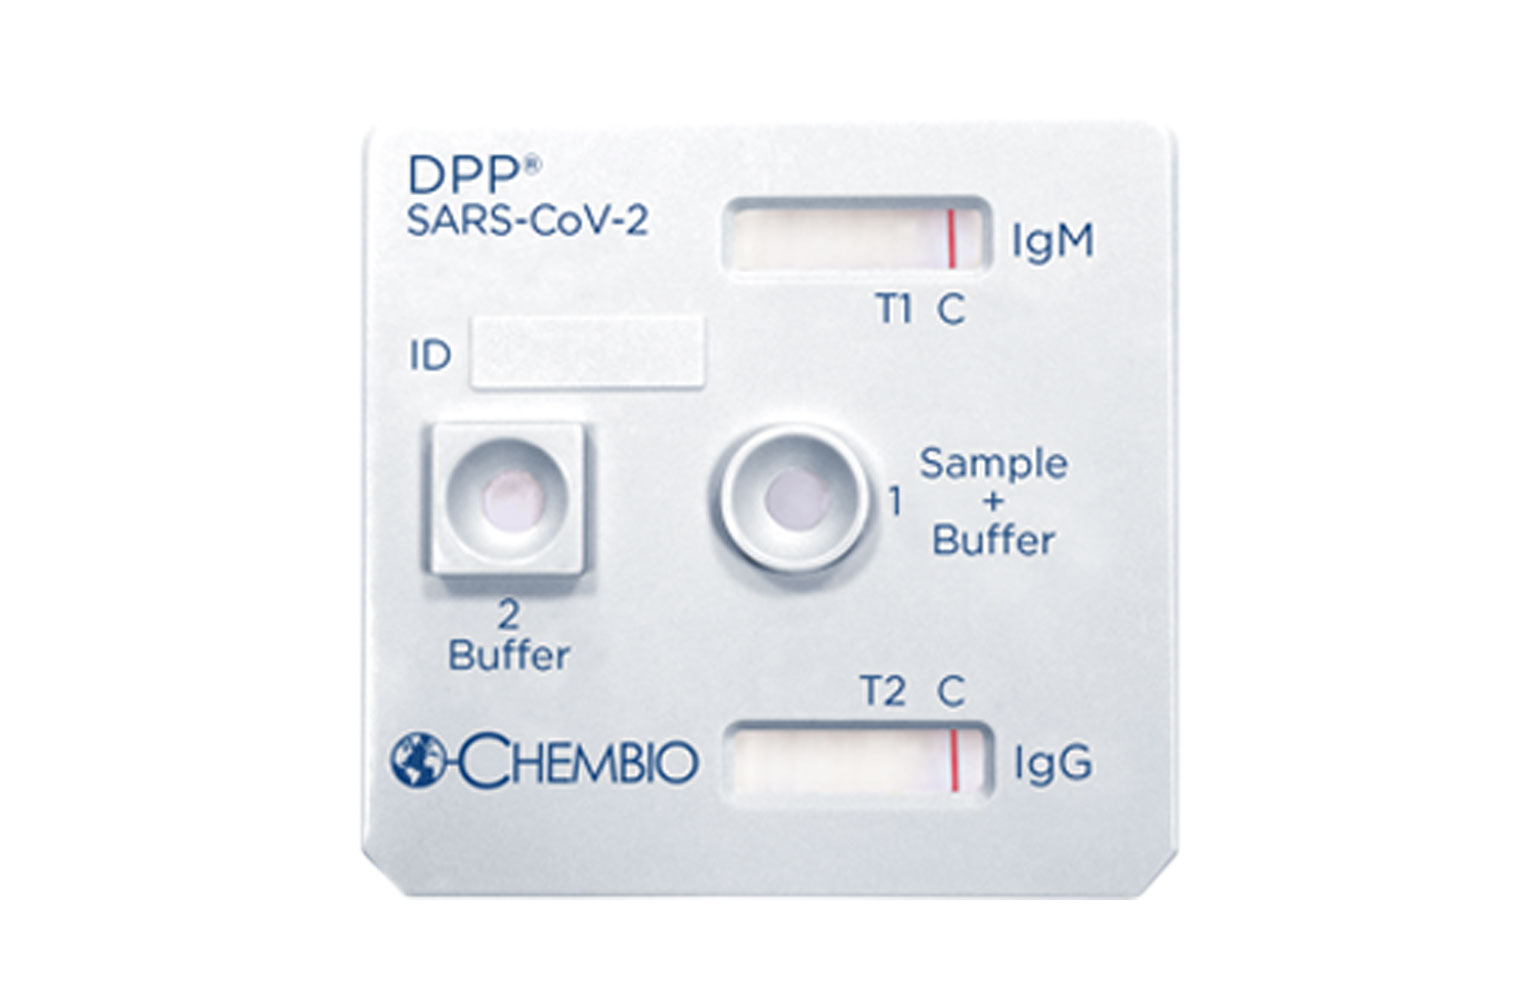 DPP® SARS-CoV-2 IgM/IgG System